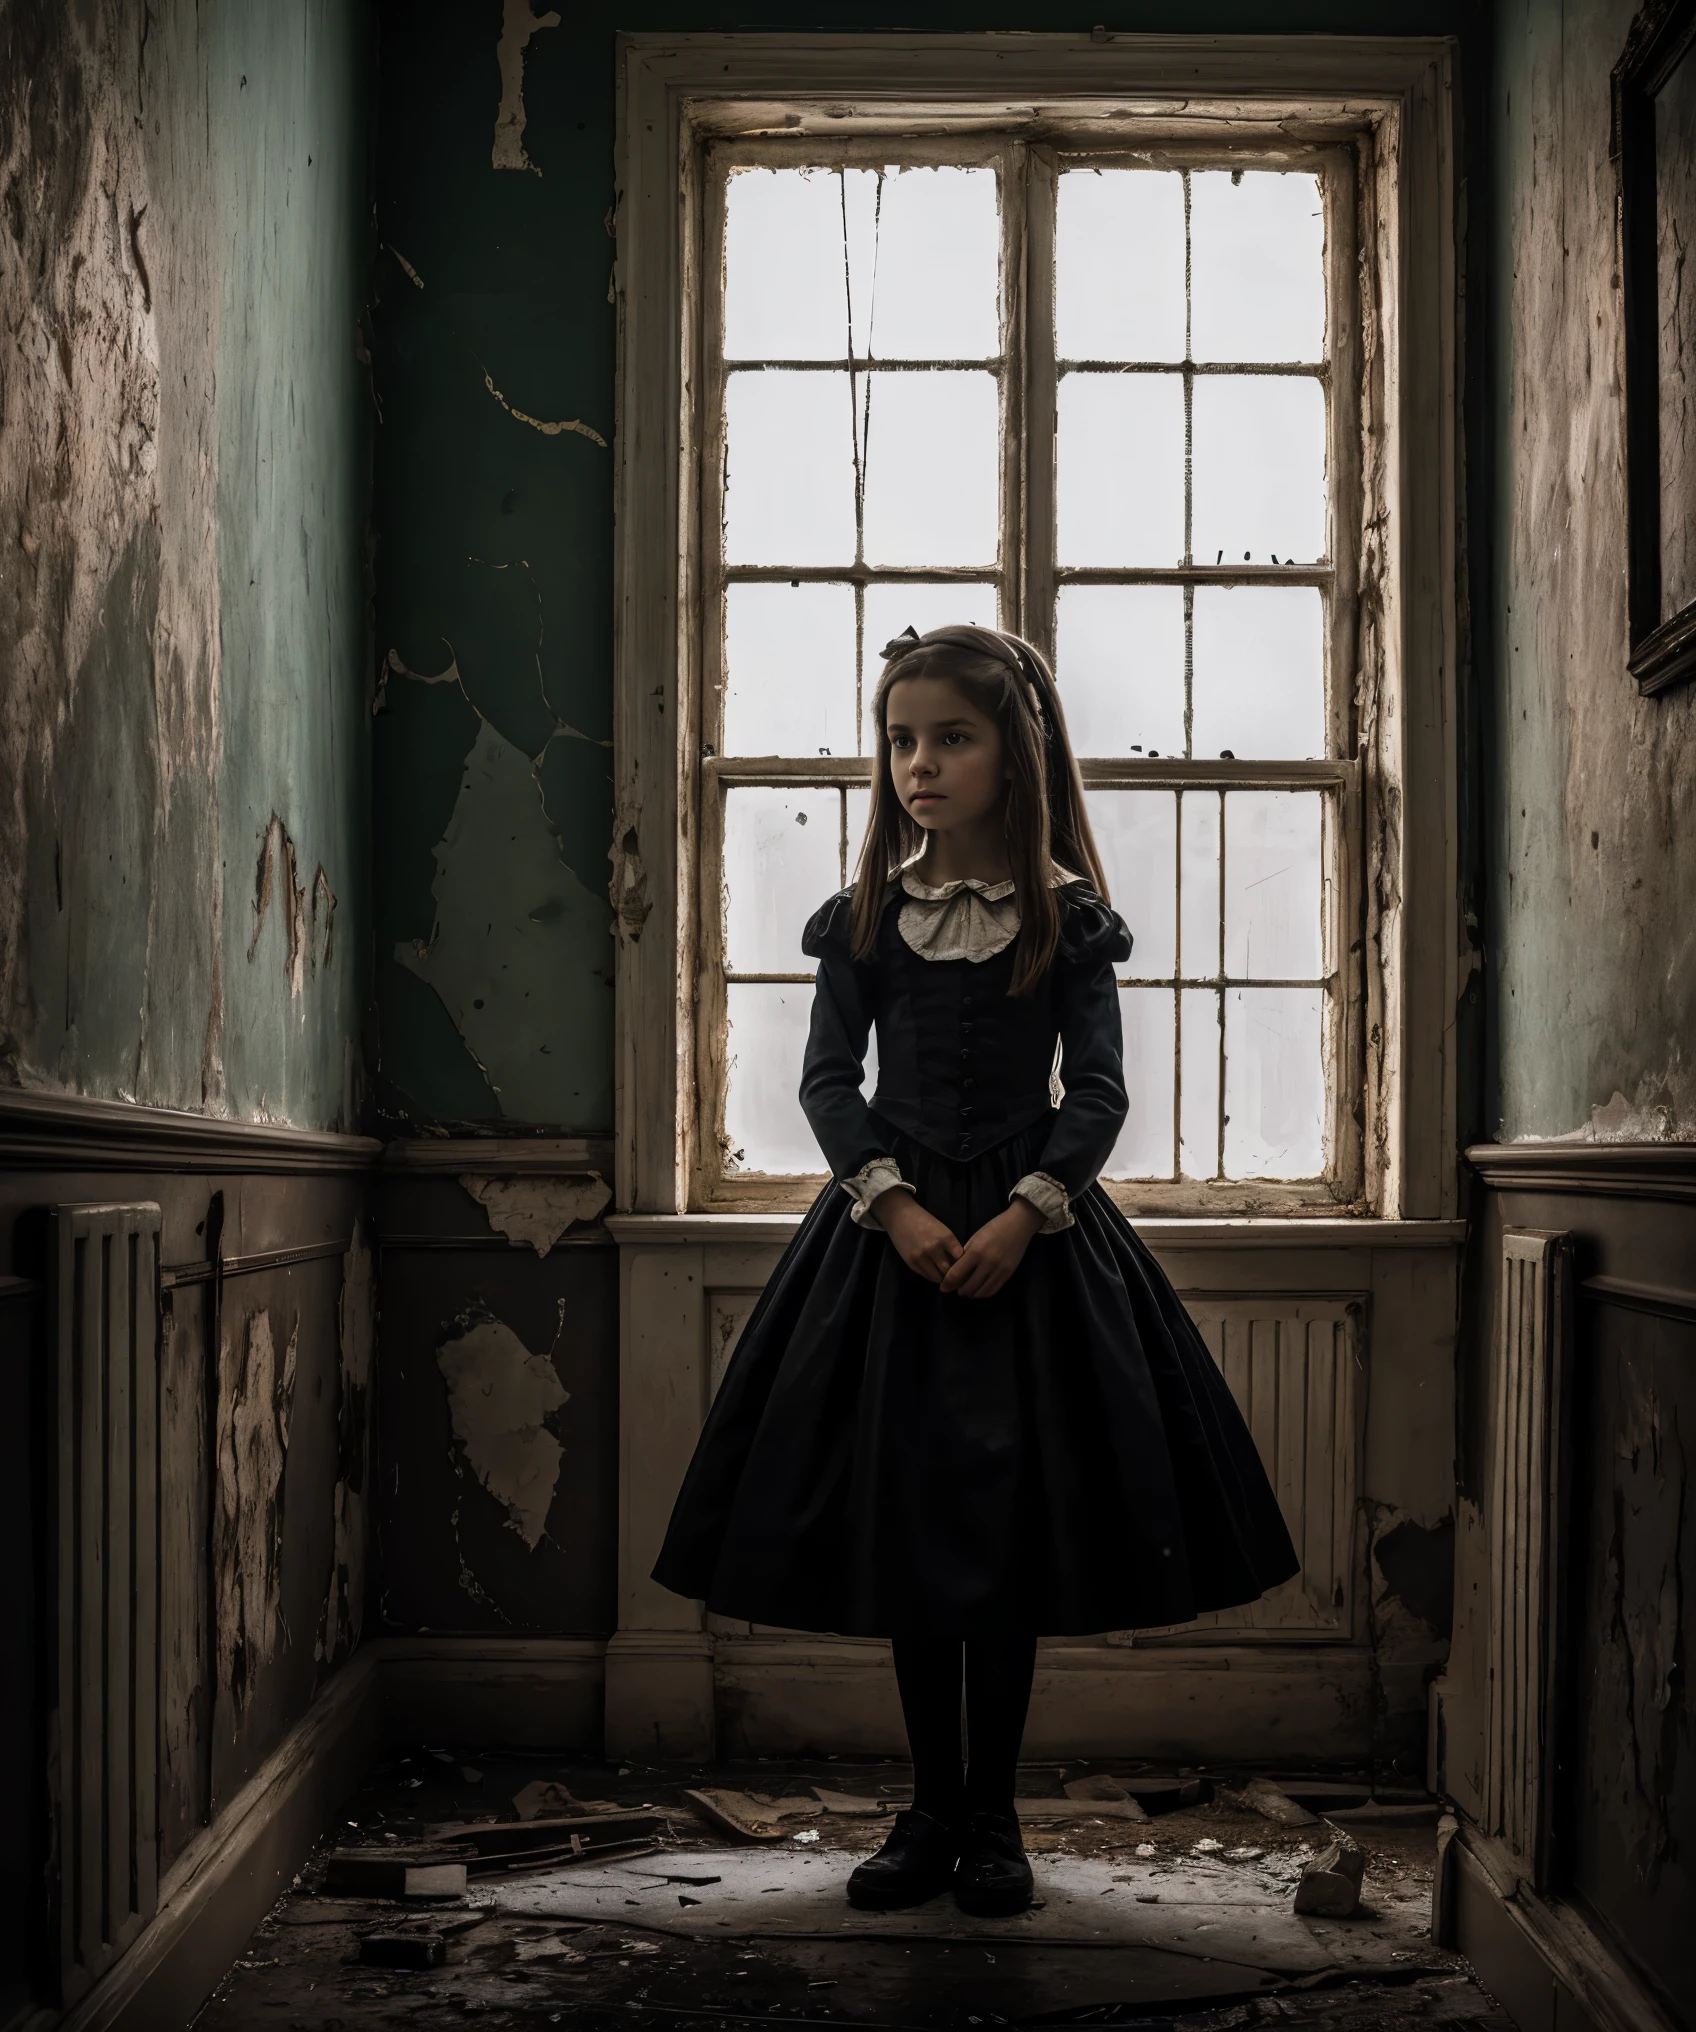 sehr detailliert, fotorealistisches Foto eines jungen Mädchens in einer Anstalt, Alice aus "Alice im Wunderland", dunkle und unheimliche Atmosphäre, komplizierte Details wie rissige Wände und abblätternde Farbe, inspiriert von den Werken von Lewis Carroll und Tim Burton.